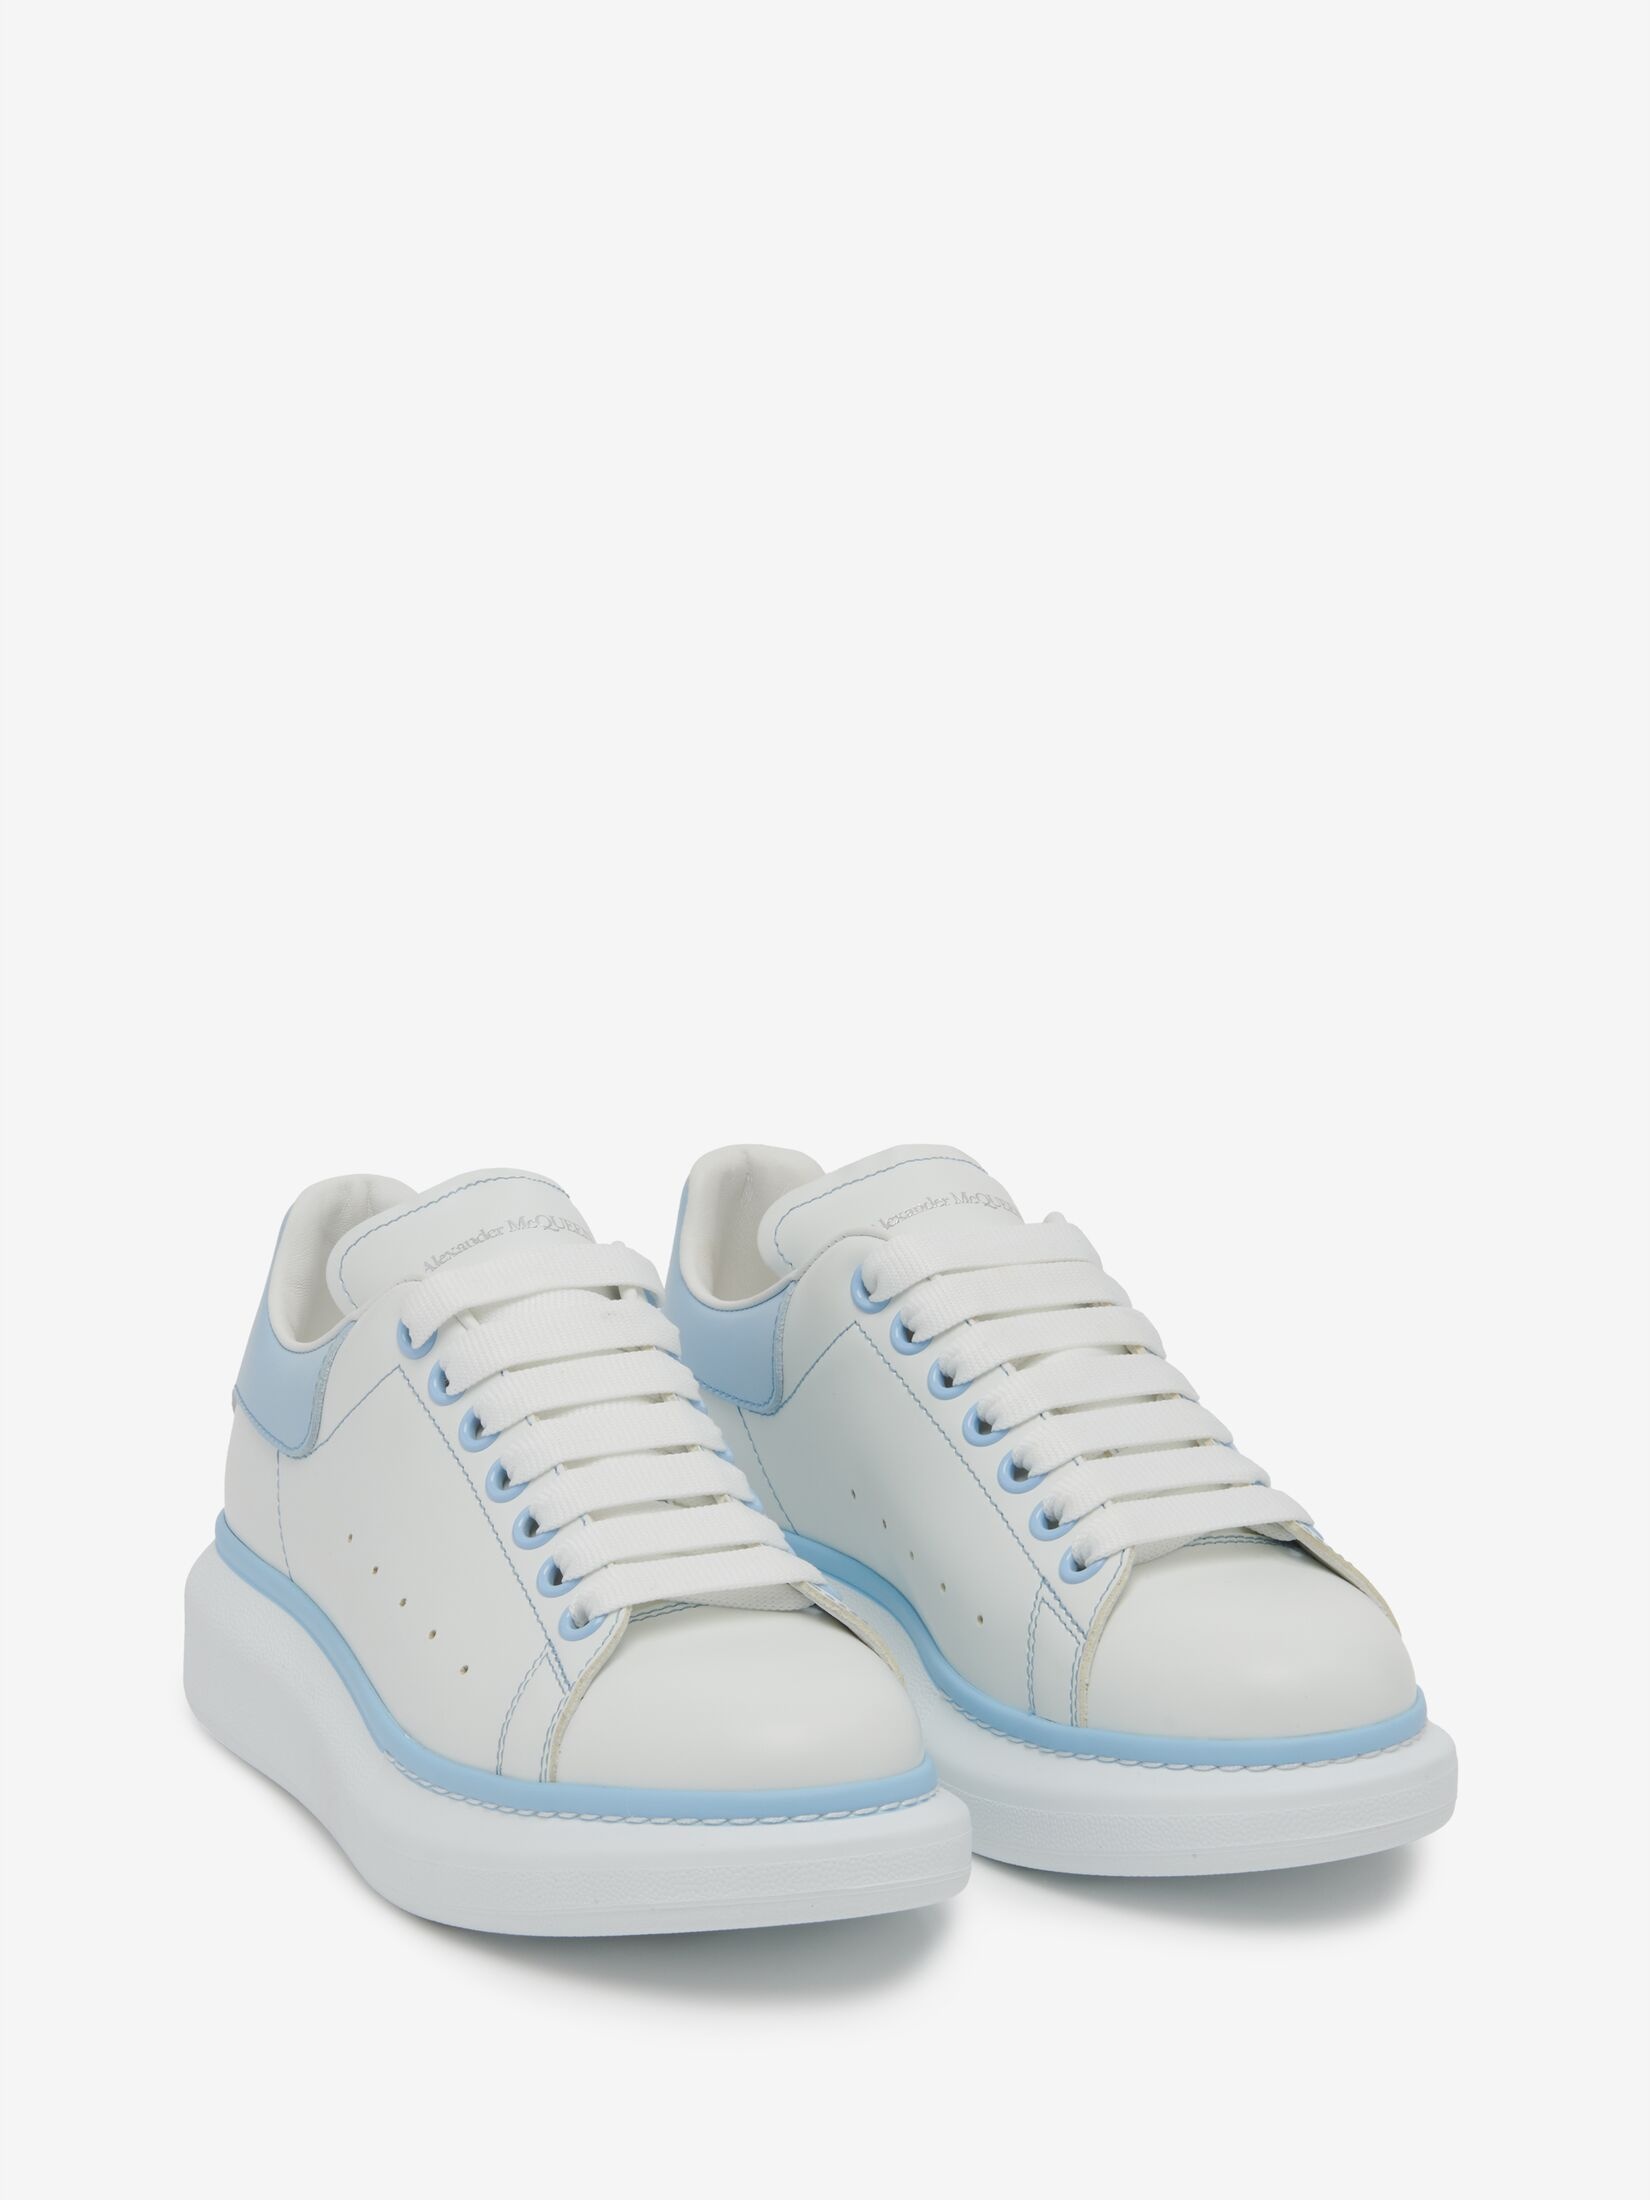 Women's Oversized Sneaker in White/powder Blue - 2